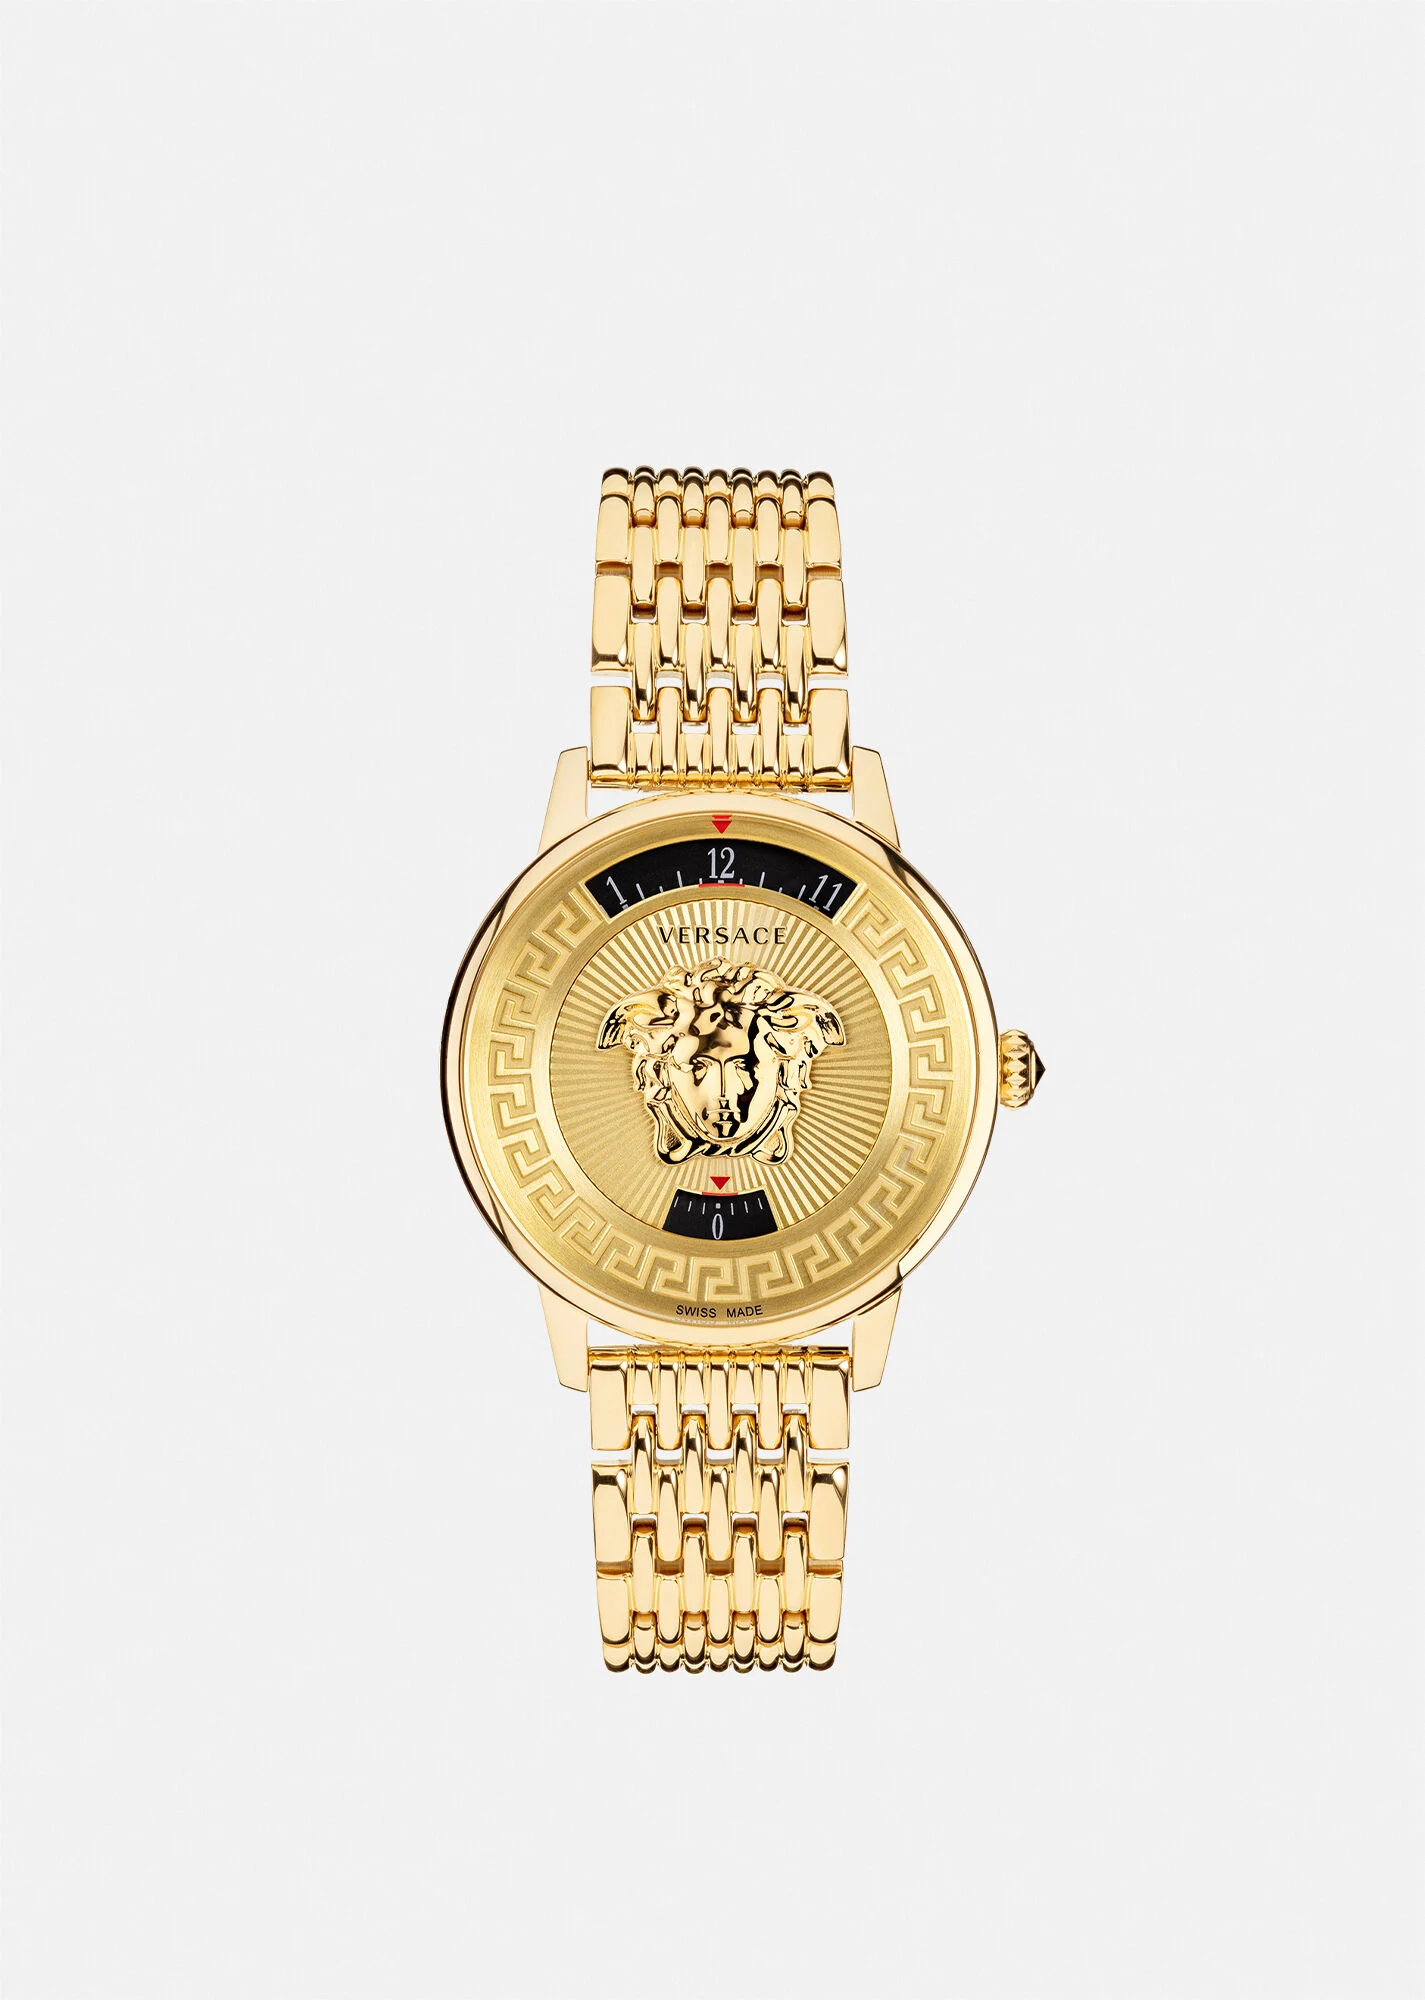 Versace VELV00720 Medusa Chain rose gold Stainless Steel Women's Watch NEW  | eBay